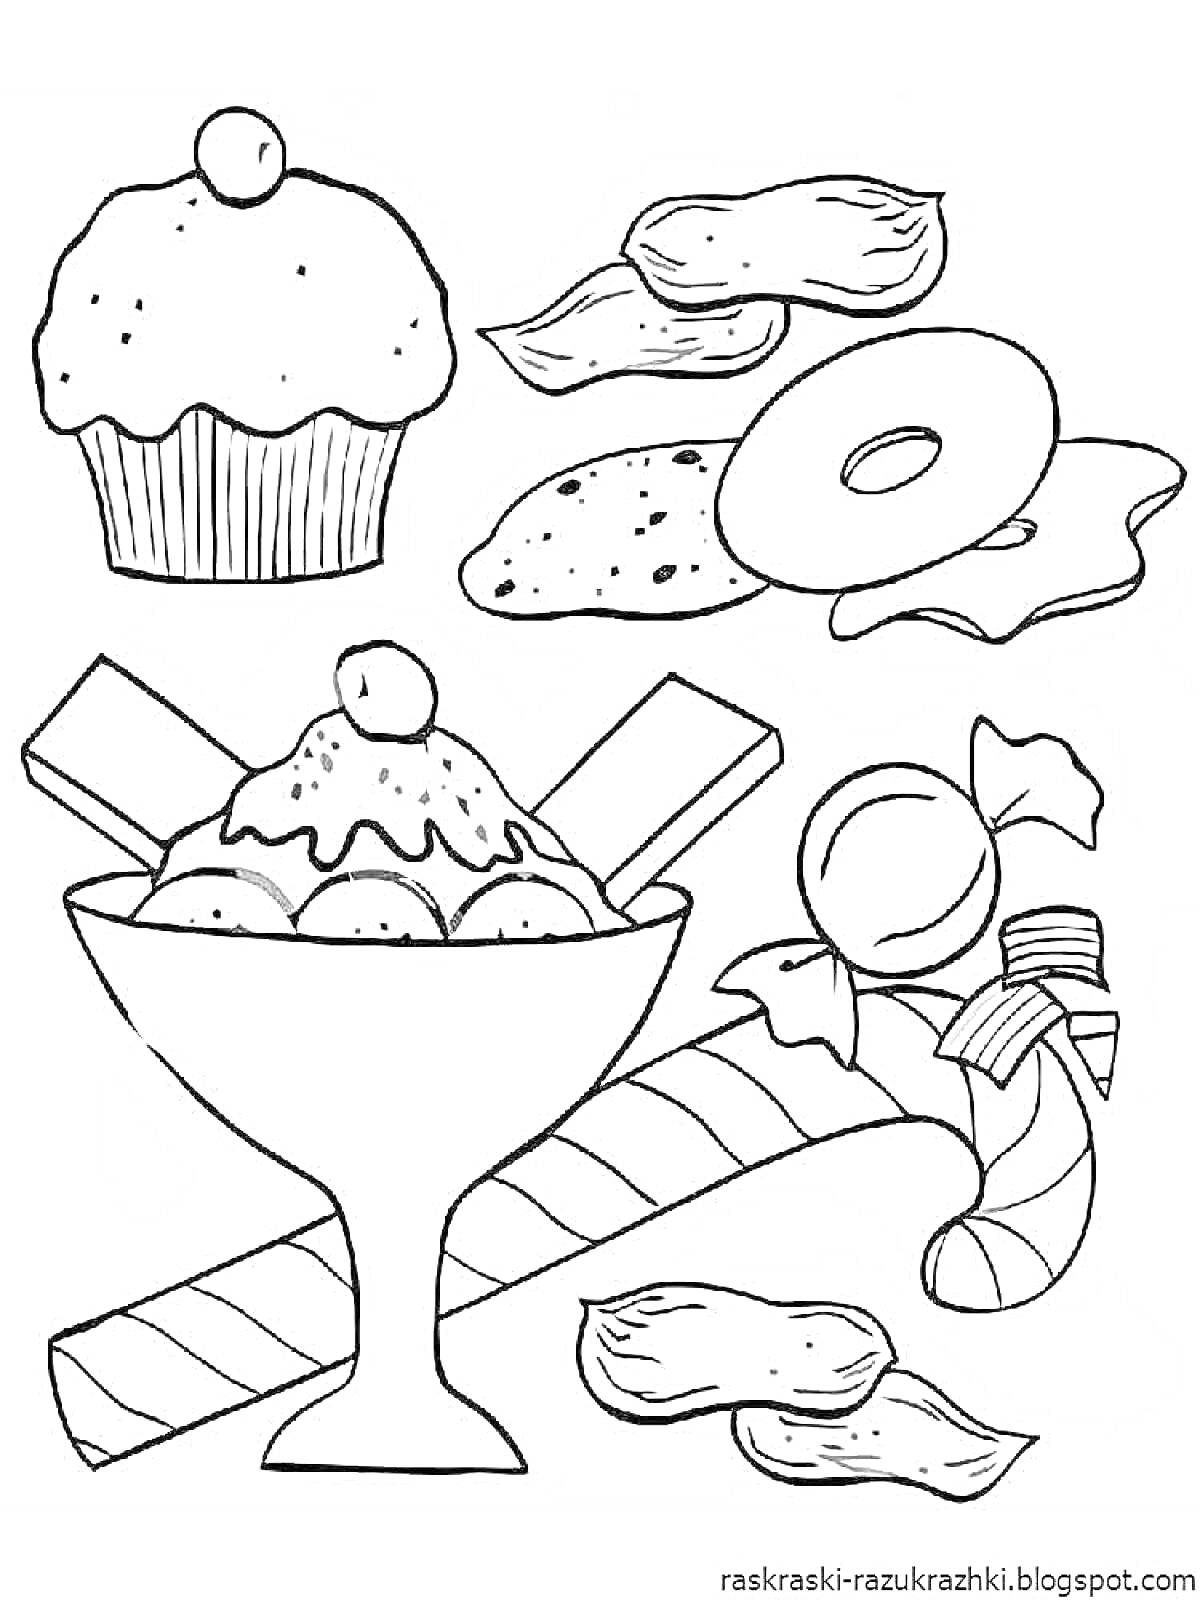 Раскраска Кекс с вишней, печенье, пончик, мороженое в креманке с вишней, карамельная трость, карамельный шарик и конфеты